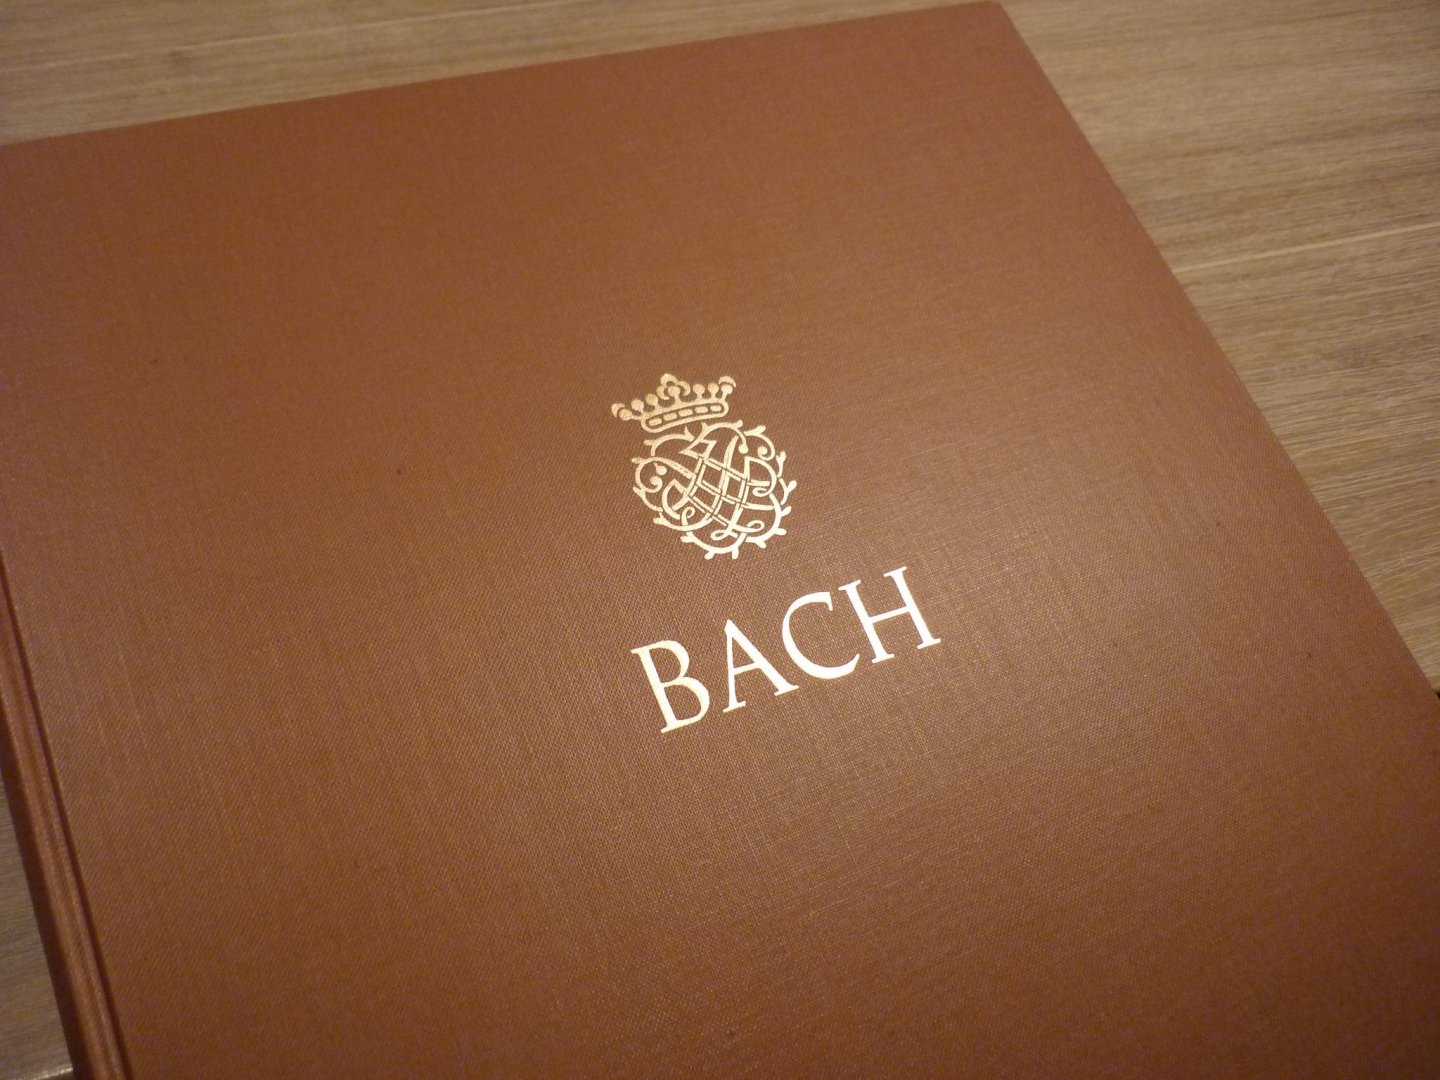 Bach; J. S. (1685-1750) - Werke für Violine; Kammermusikwerke, Band 1; Neue Ausgabe sämtlicher Werke